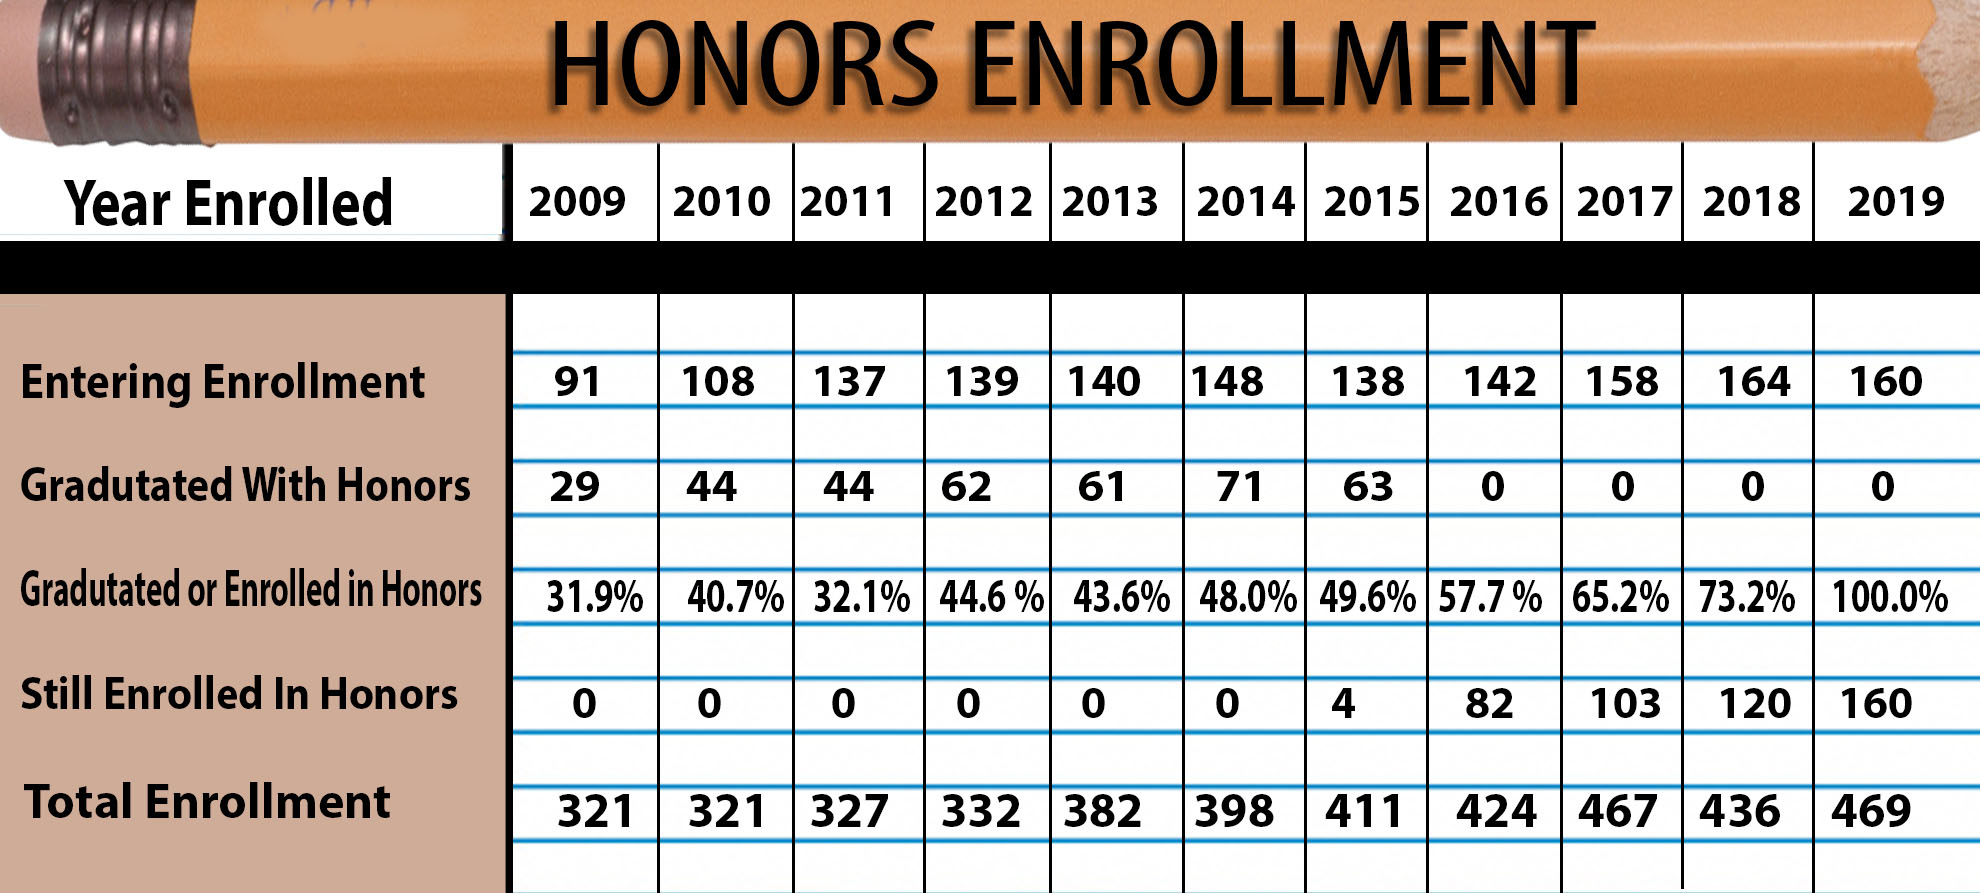 Honors program sees retention rise